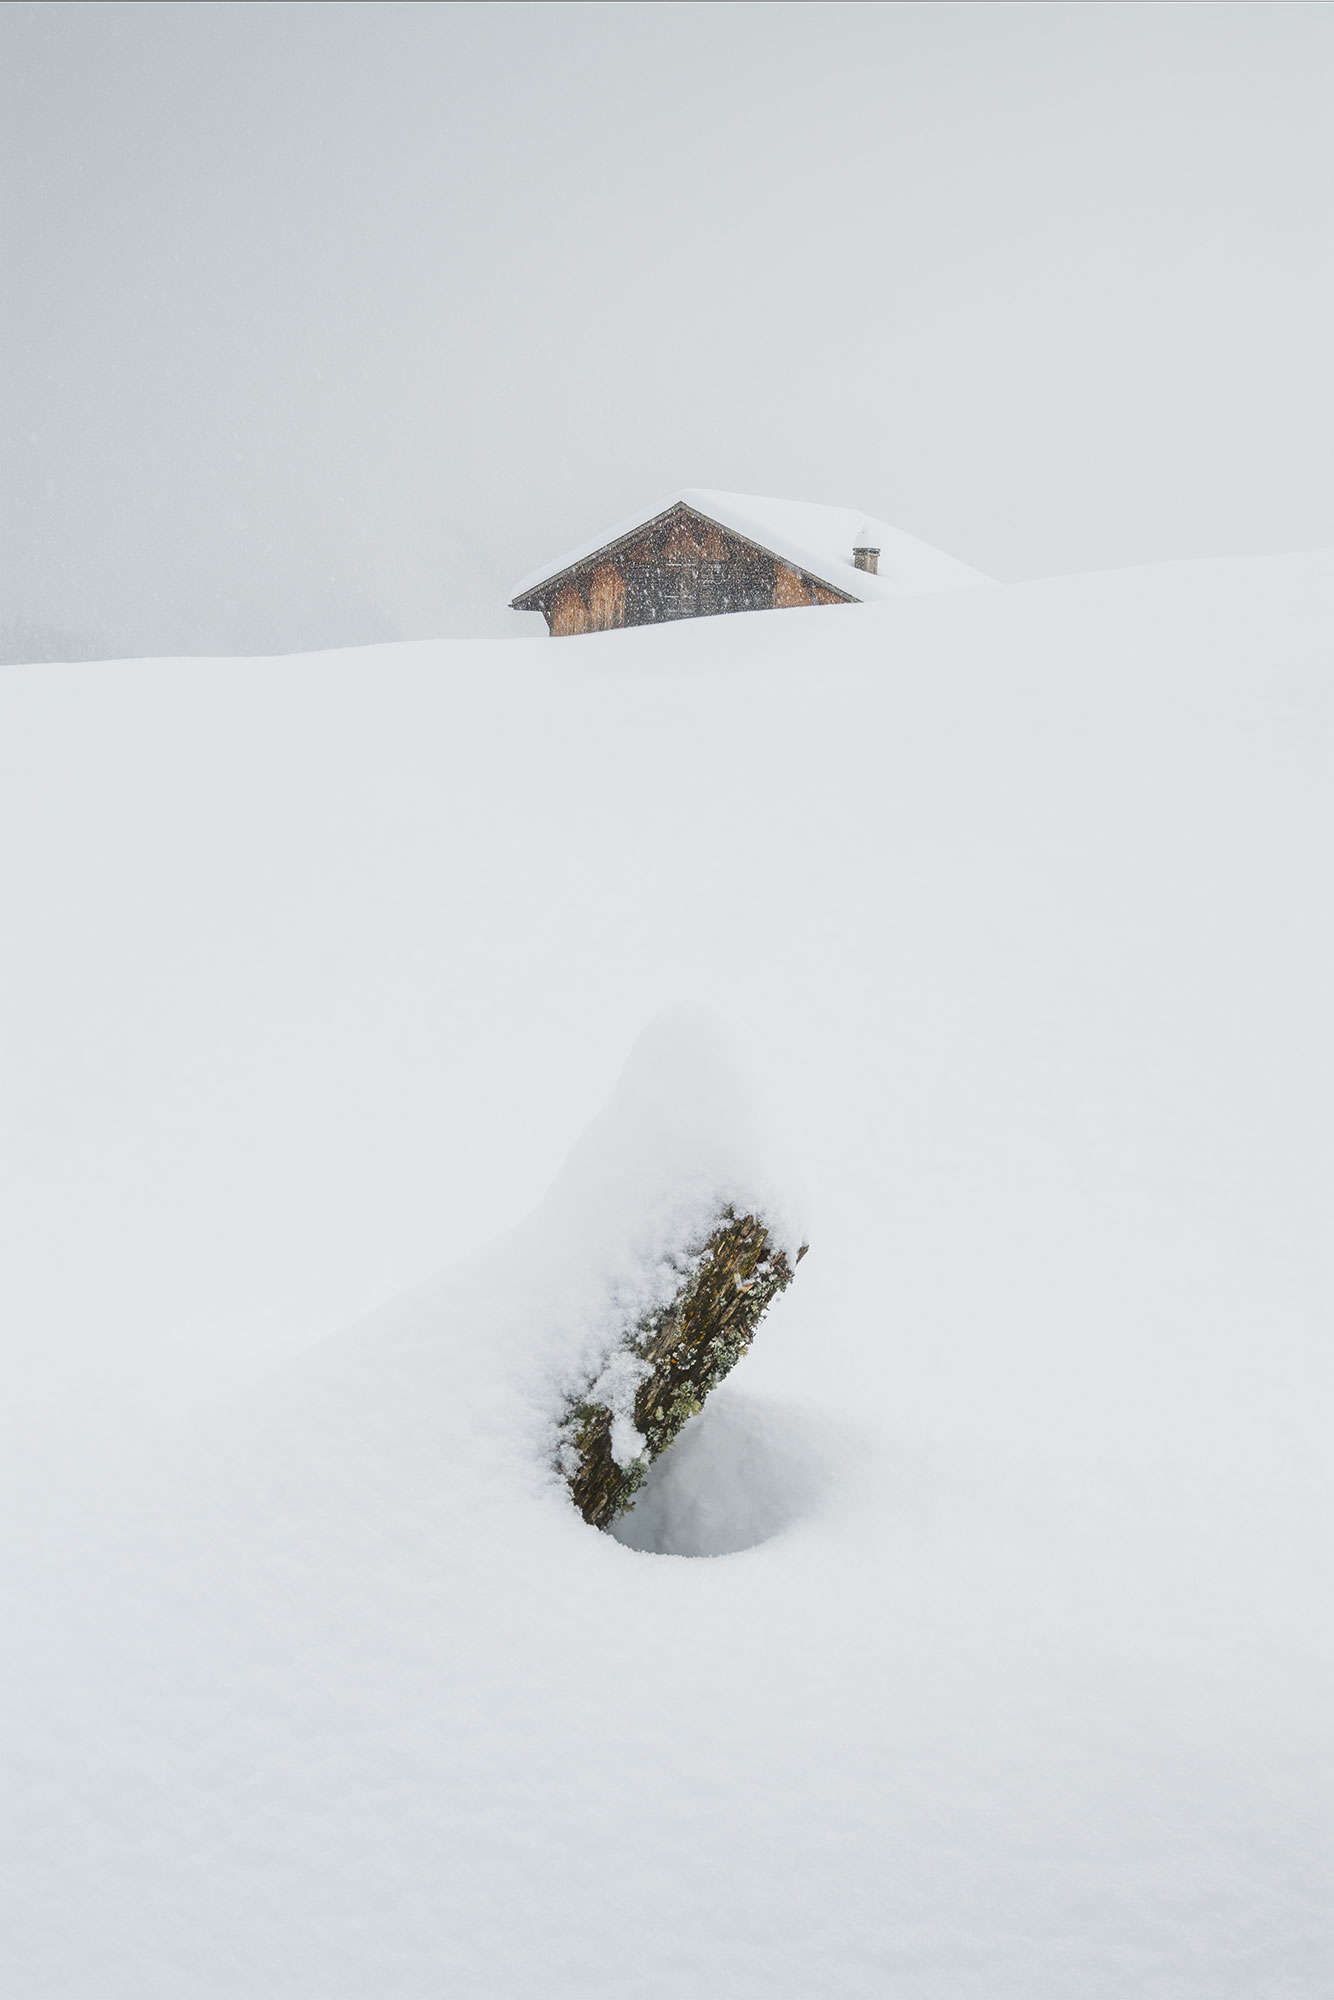 Swiss mountain landscape in a snowstorm.